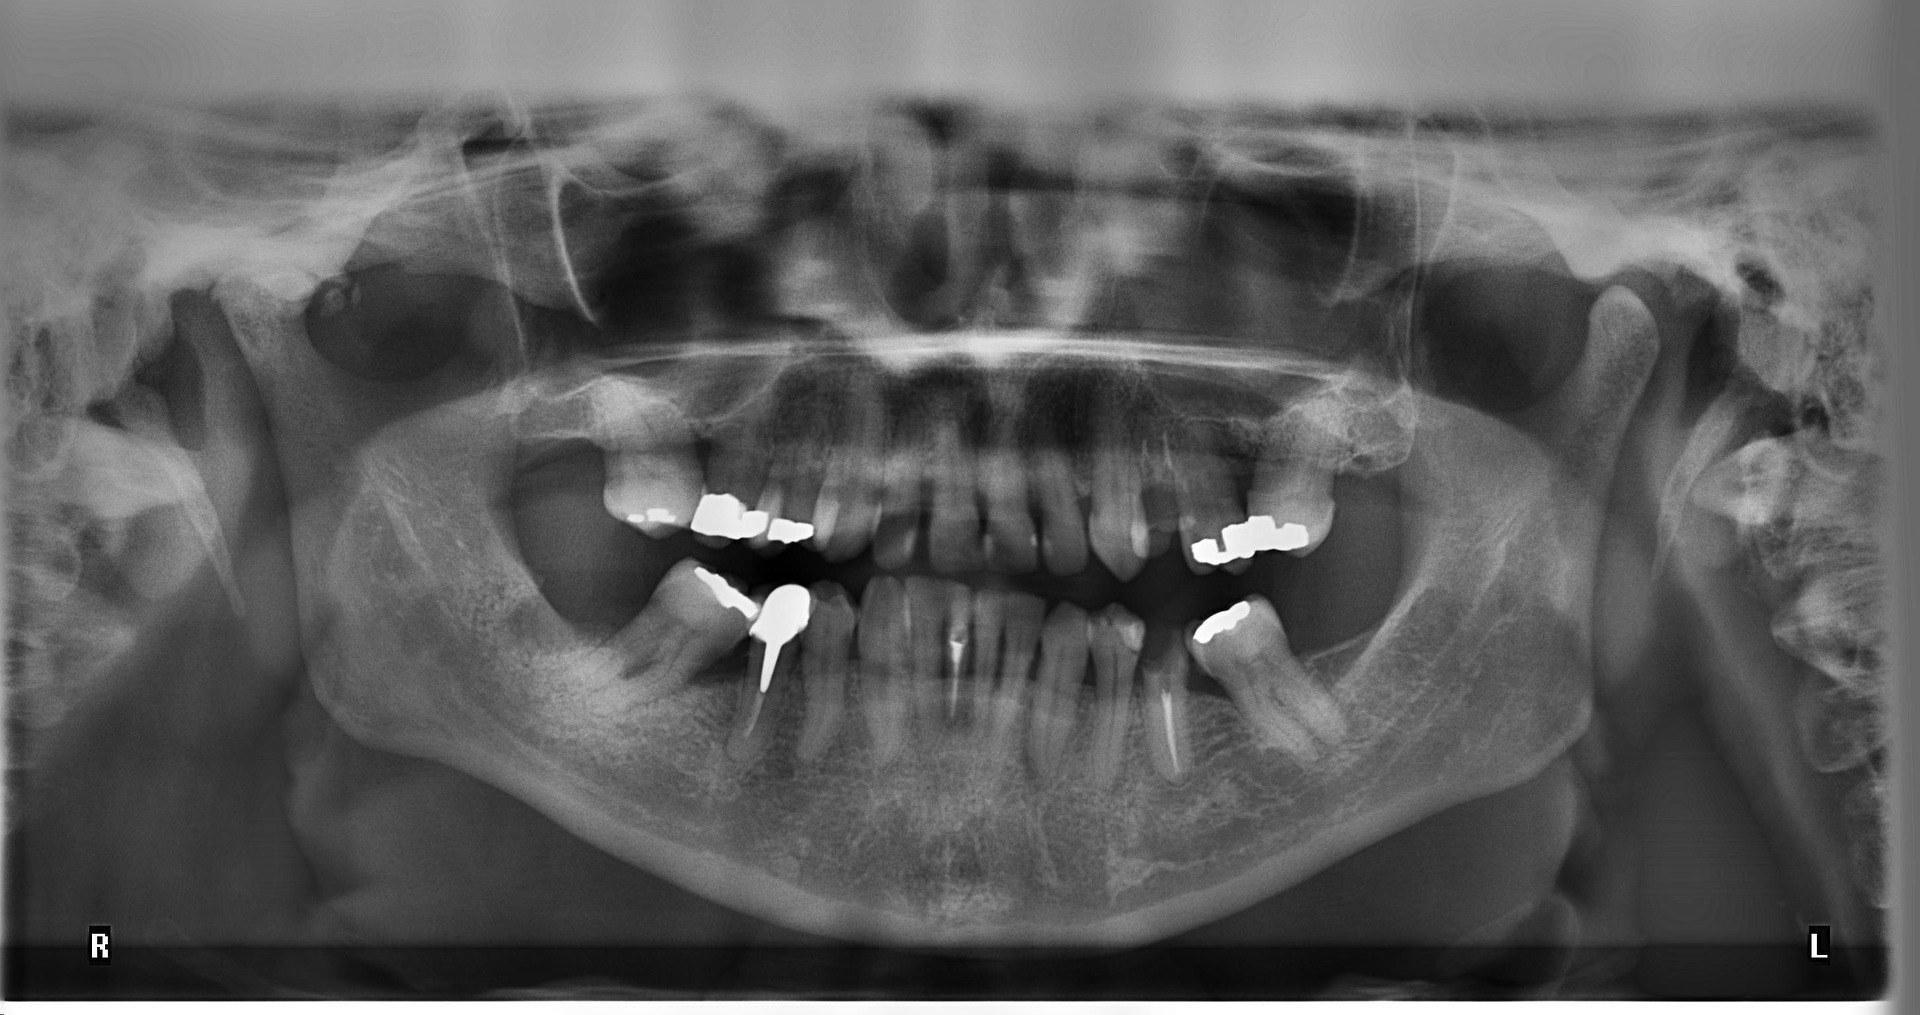 Issue Amalgam Tooth Fillings